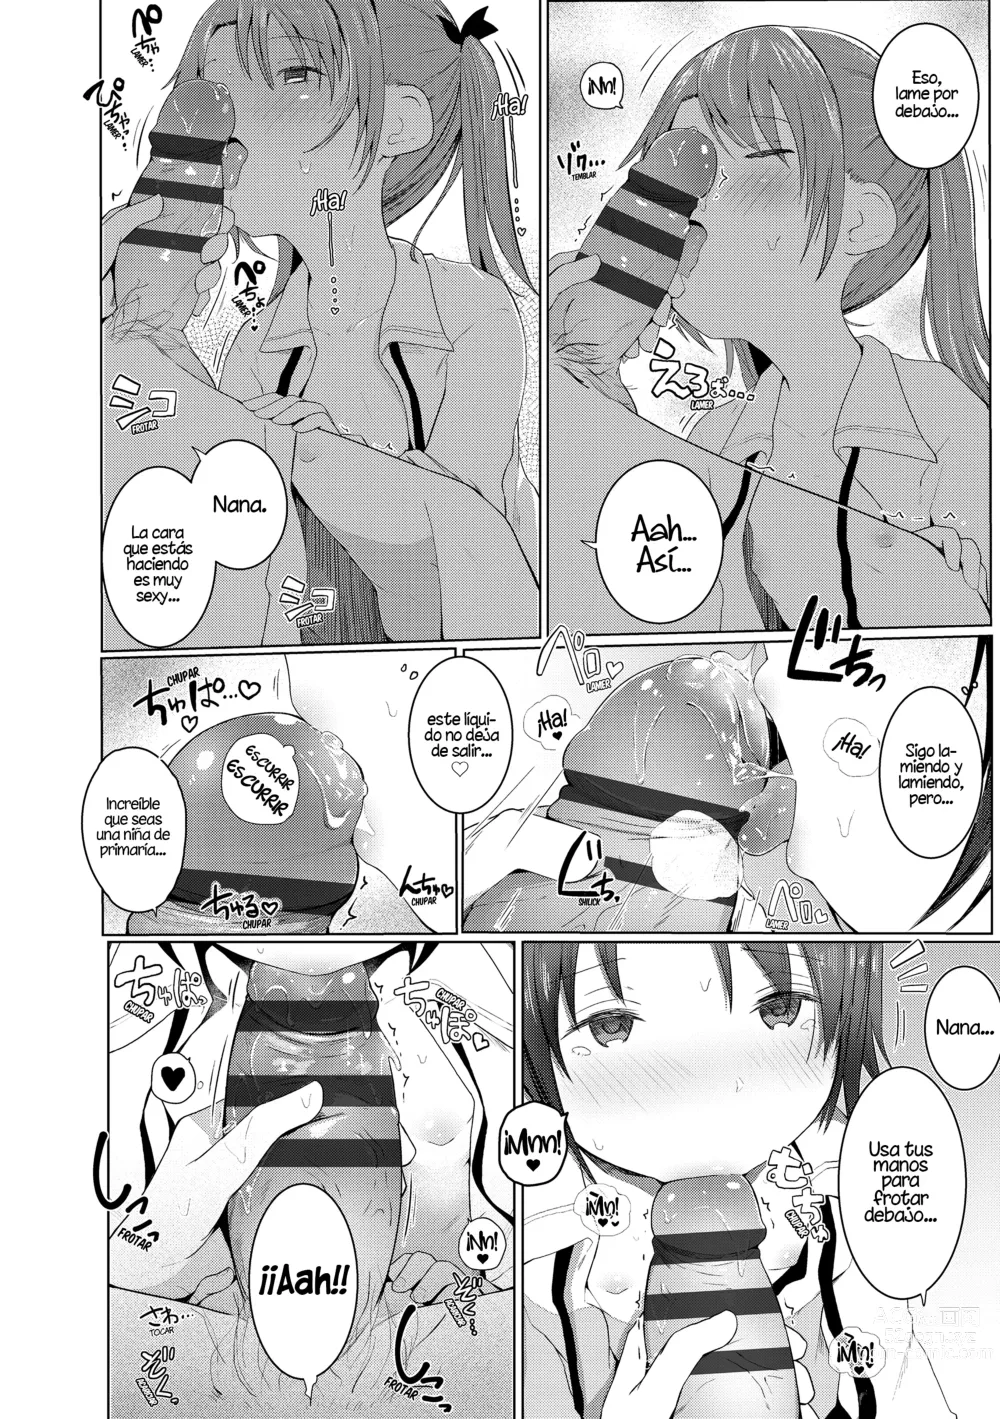 Page 6 of manga Con la ayuda de mi hermana